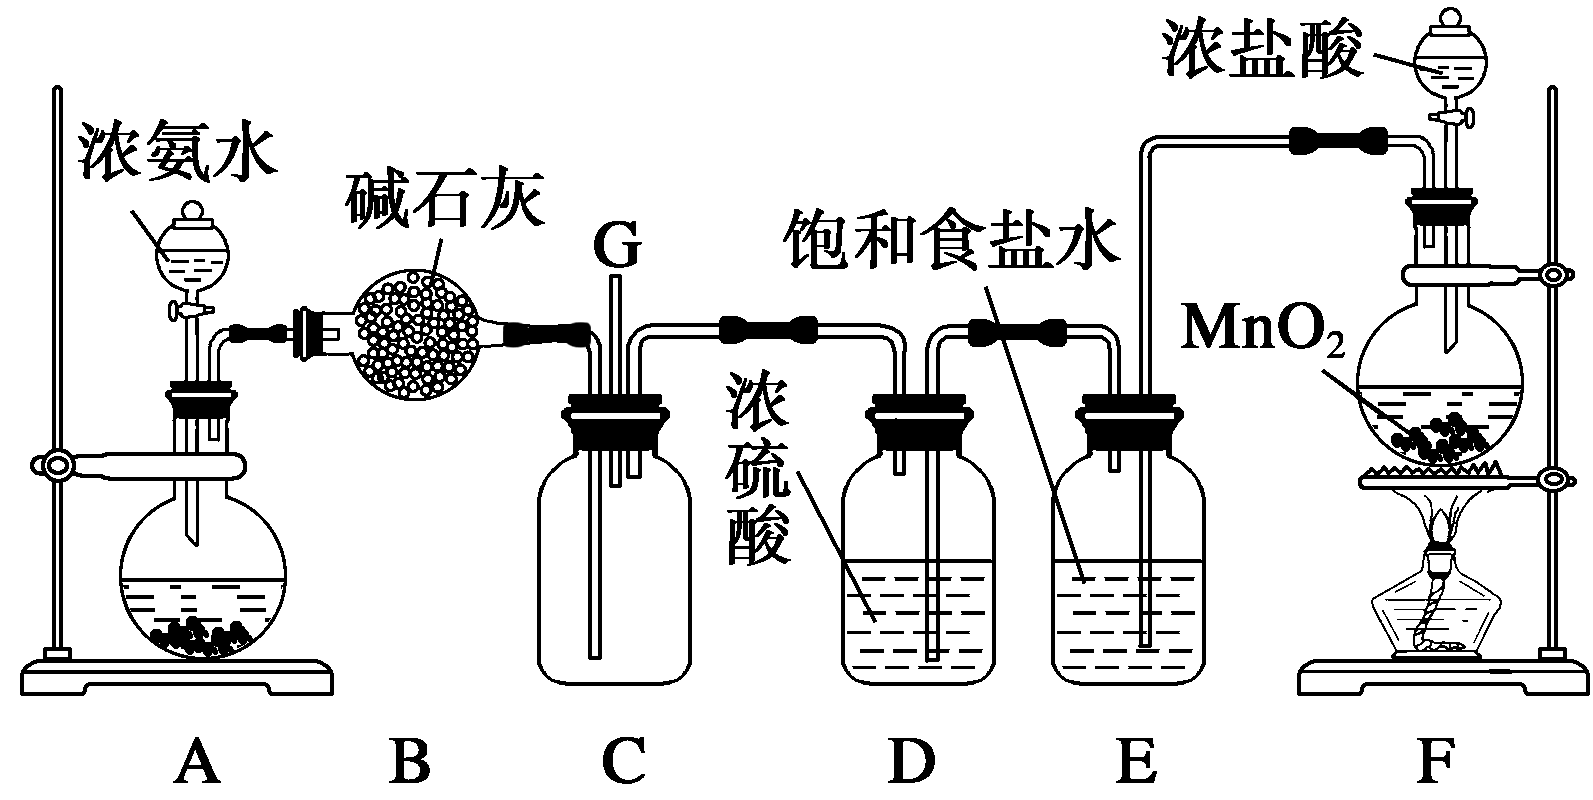 a,f分别为氨气和氯气的发生装置,c为纯净干燥的氯气与氨气反应的装置